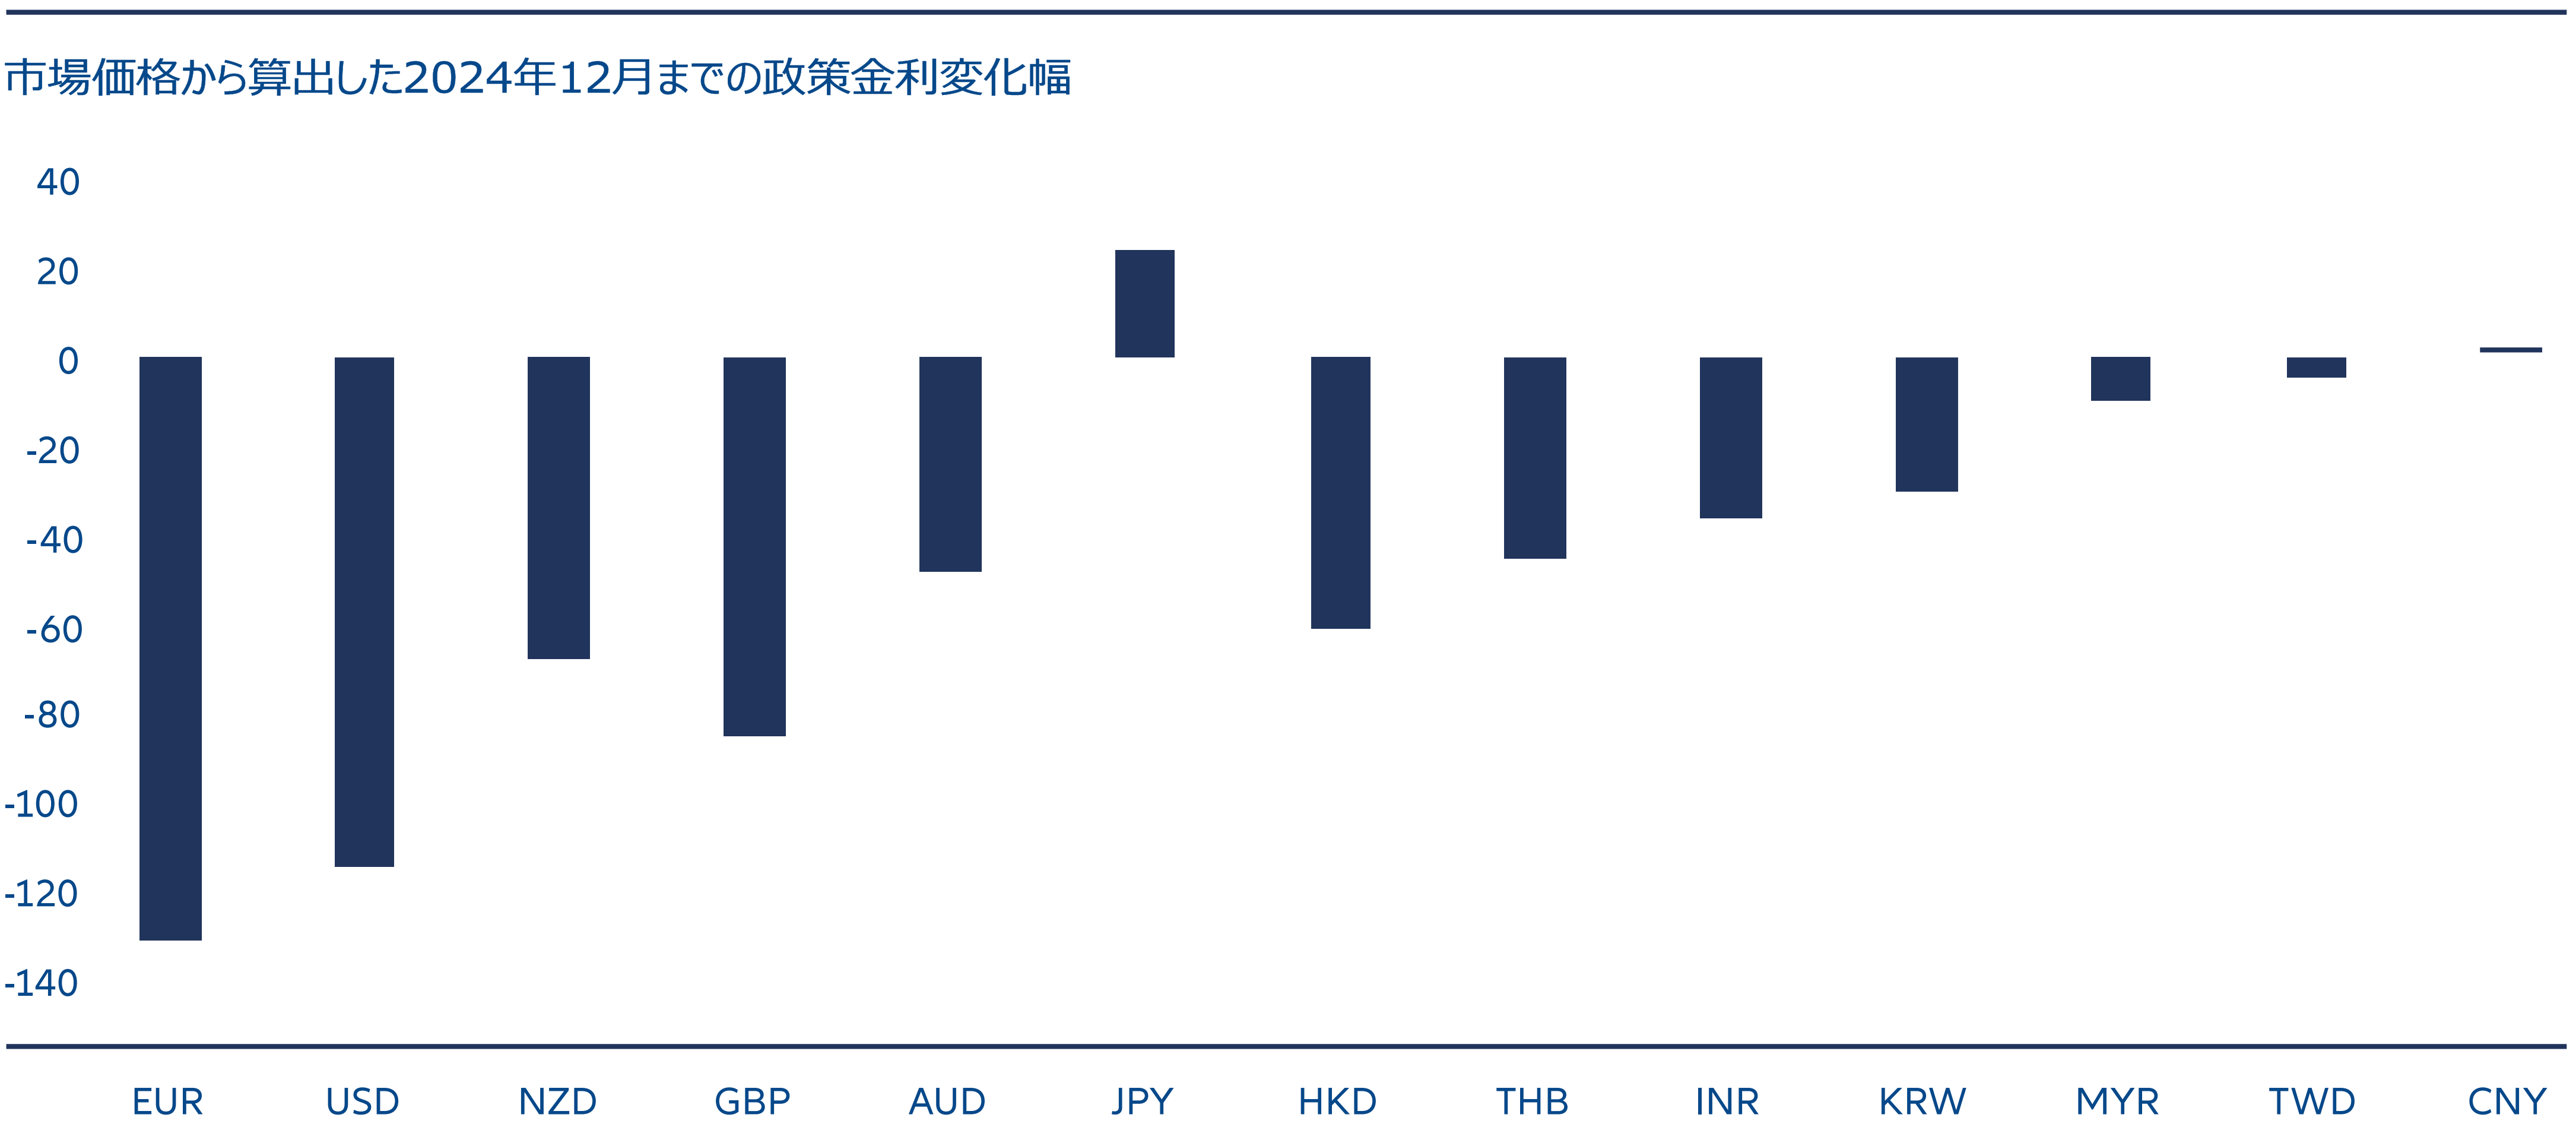 図表1: 金融緩和の織り込み度合いが低いアジア各国